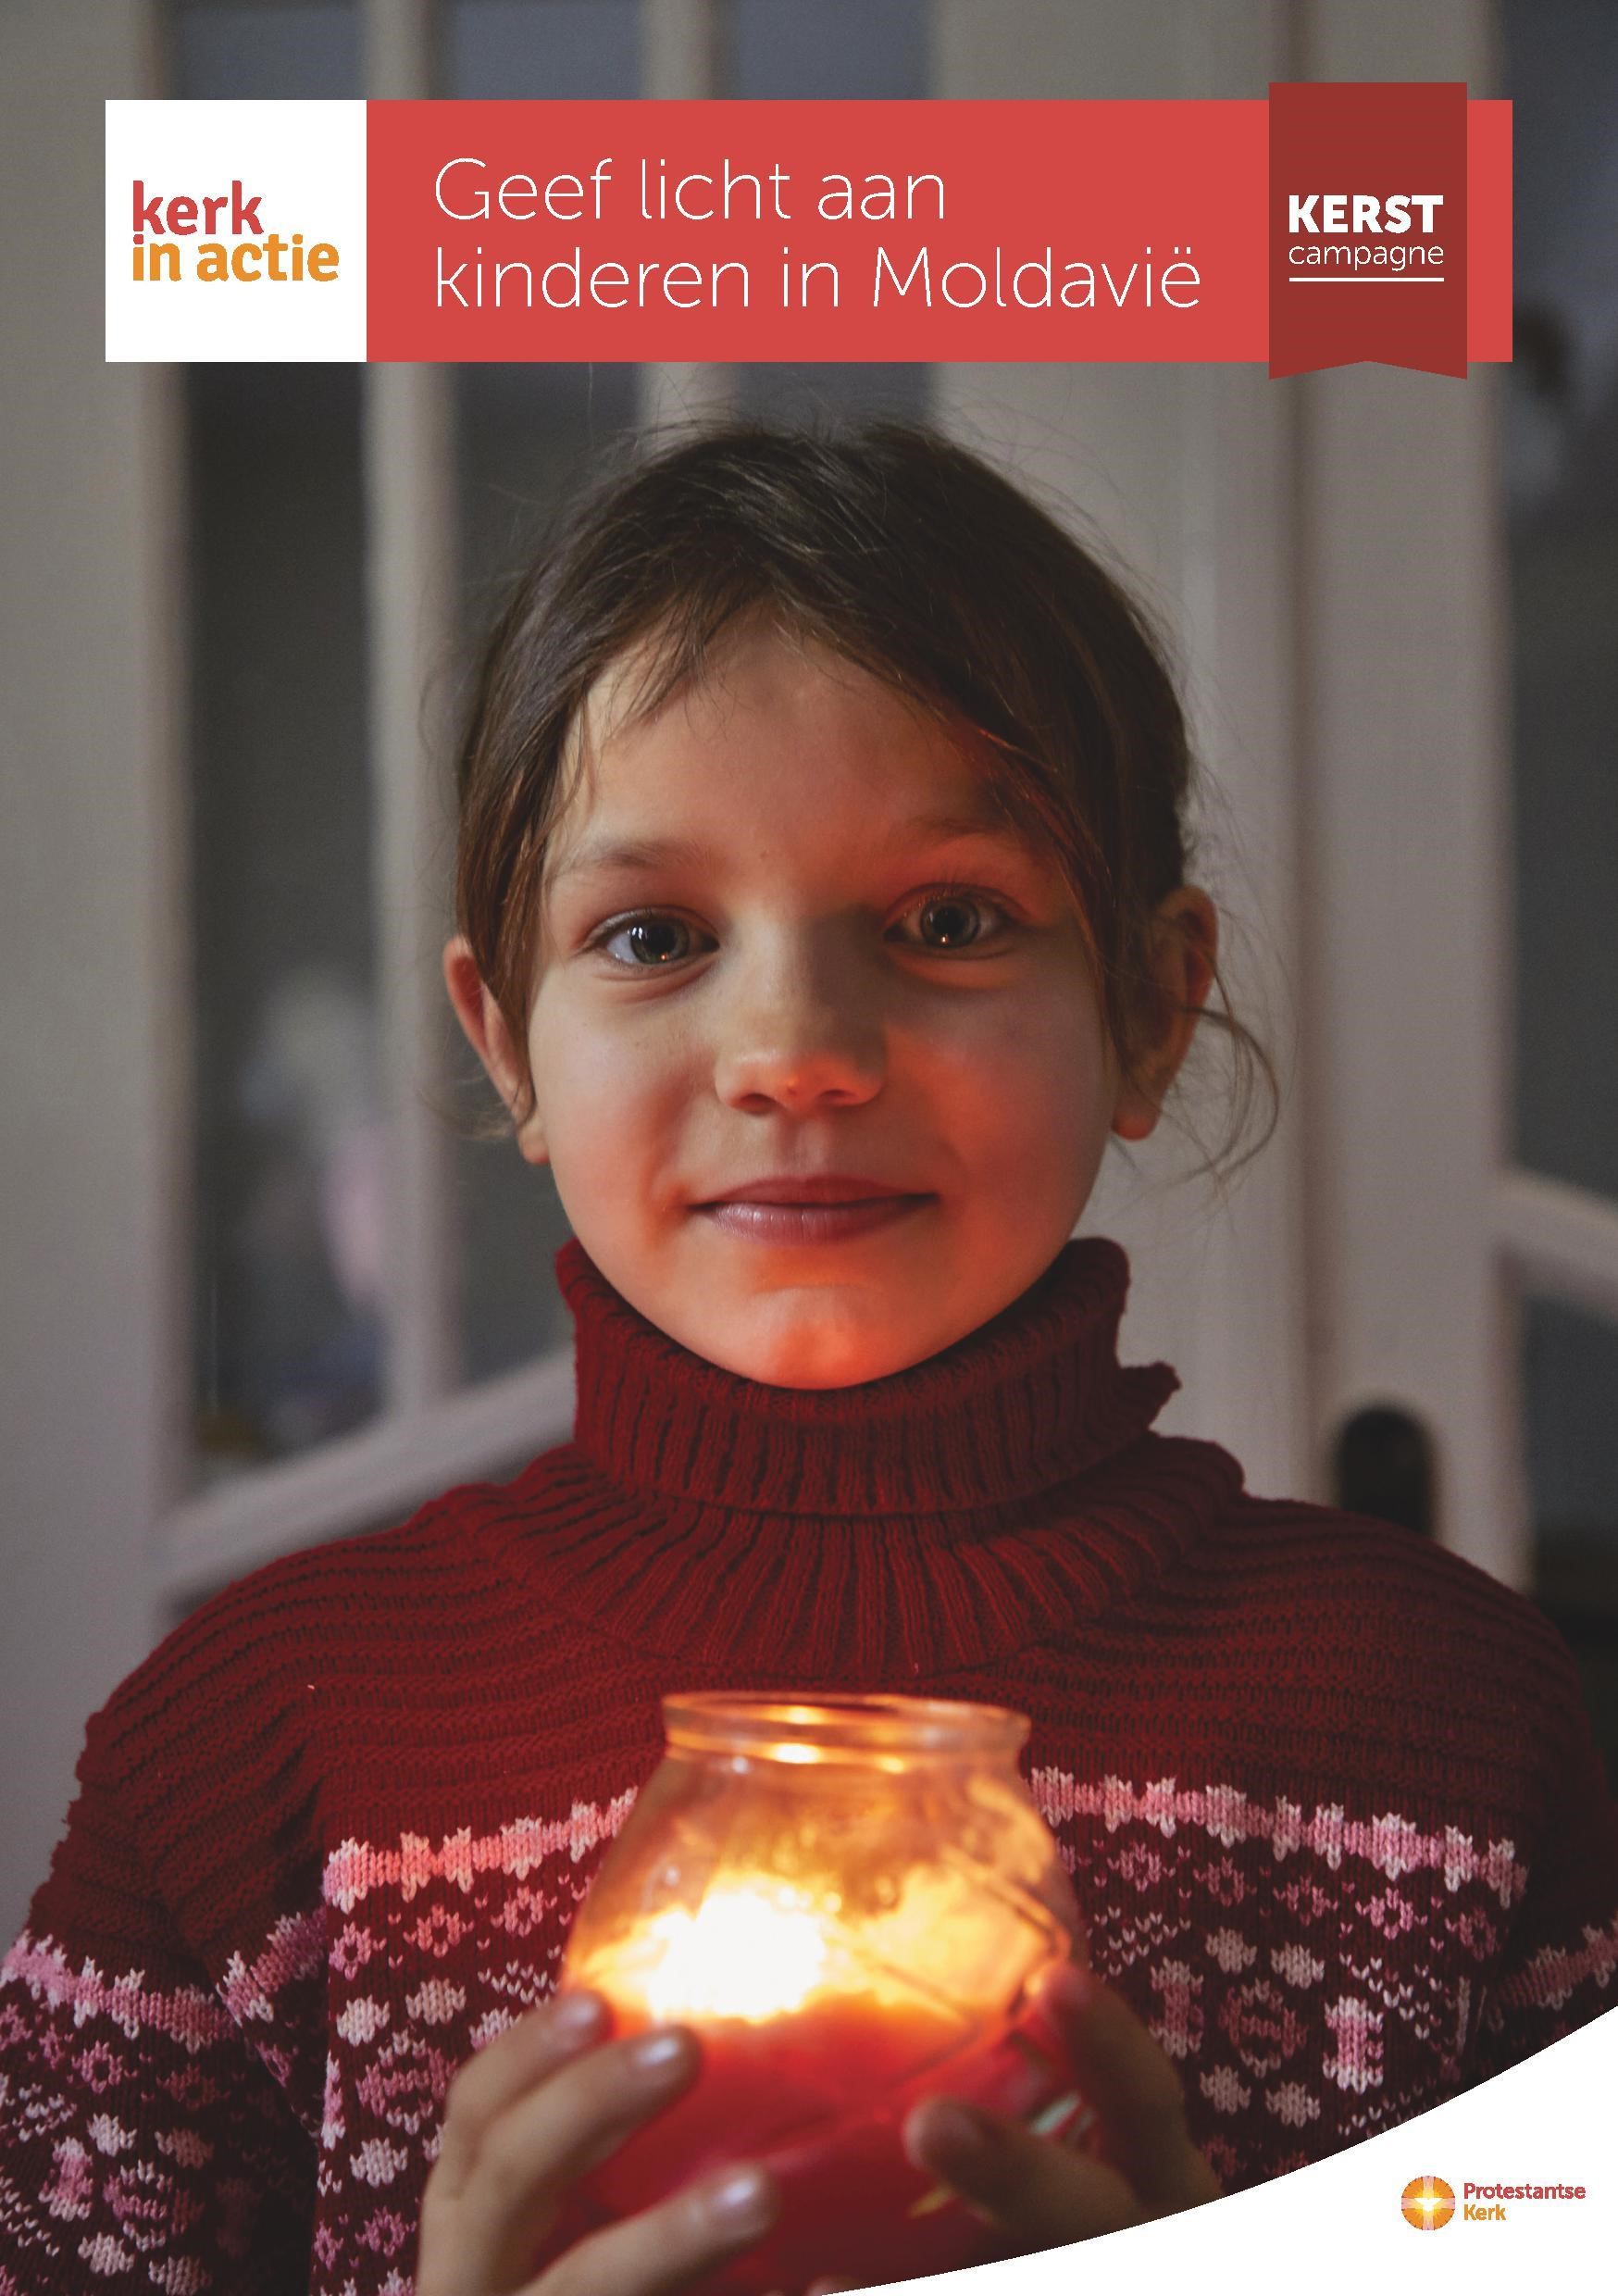 Kerst collecte: Geef licht aan kinderen in Moldavië